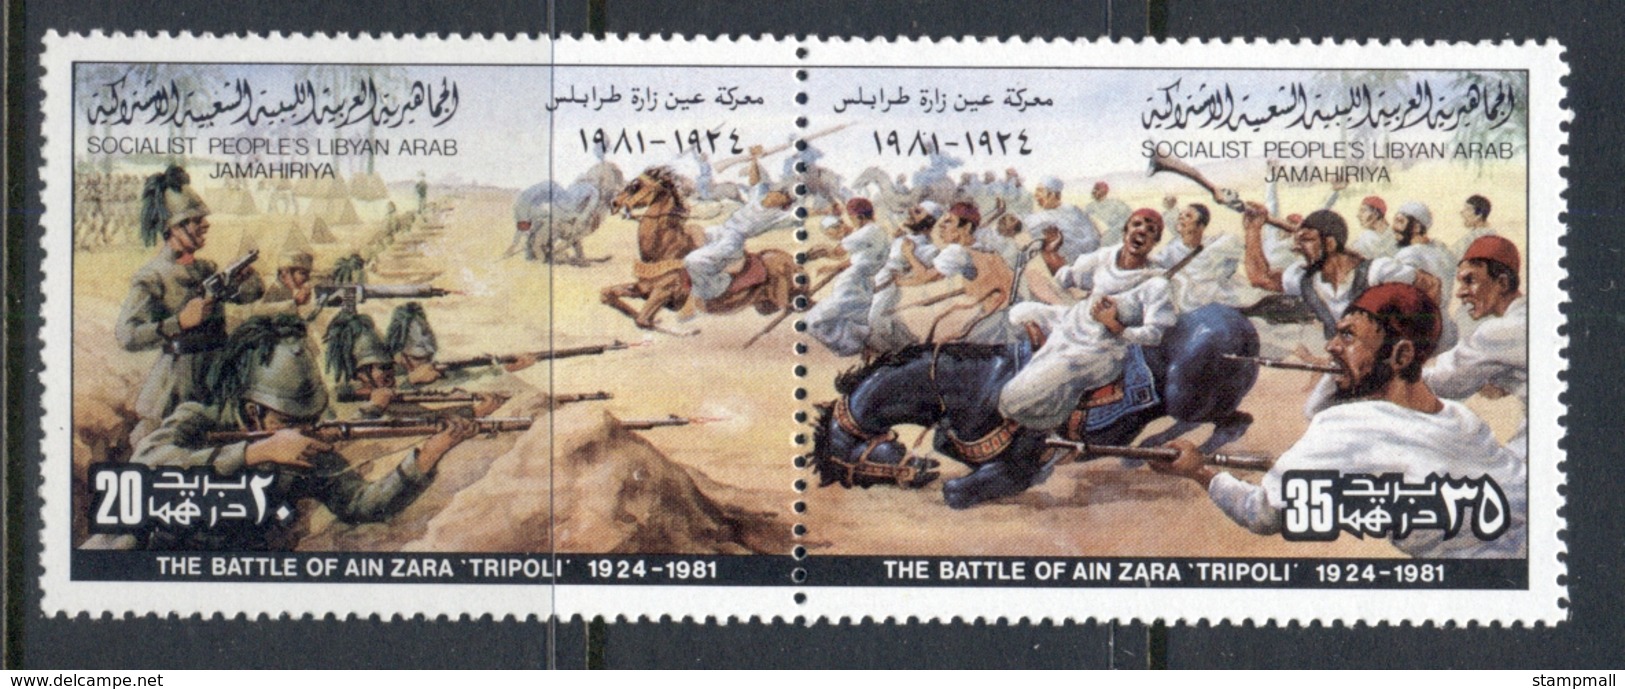 Libya 1982 Battles, Tripoli MUH - Libya